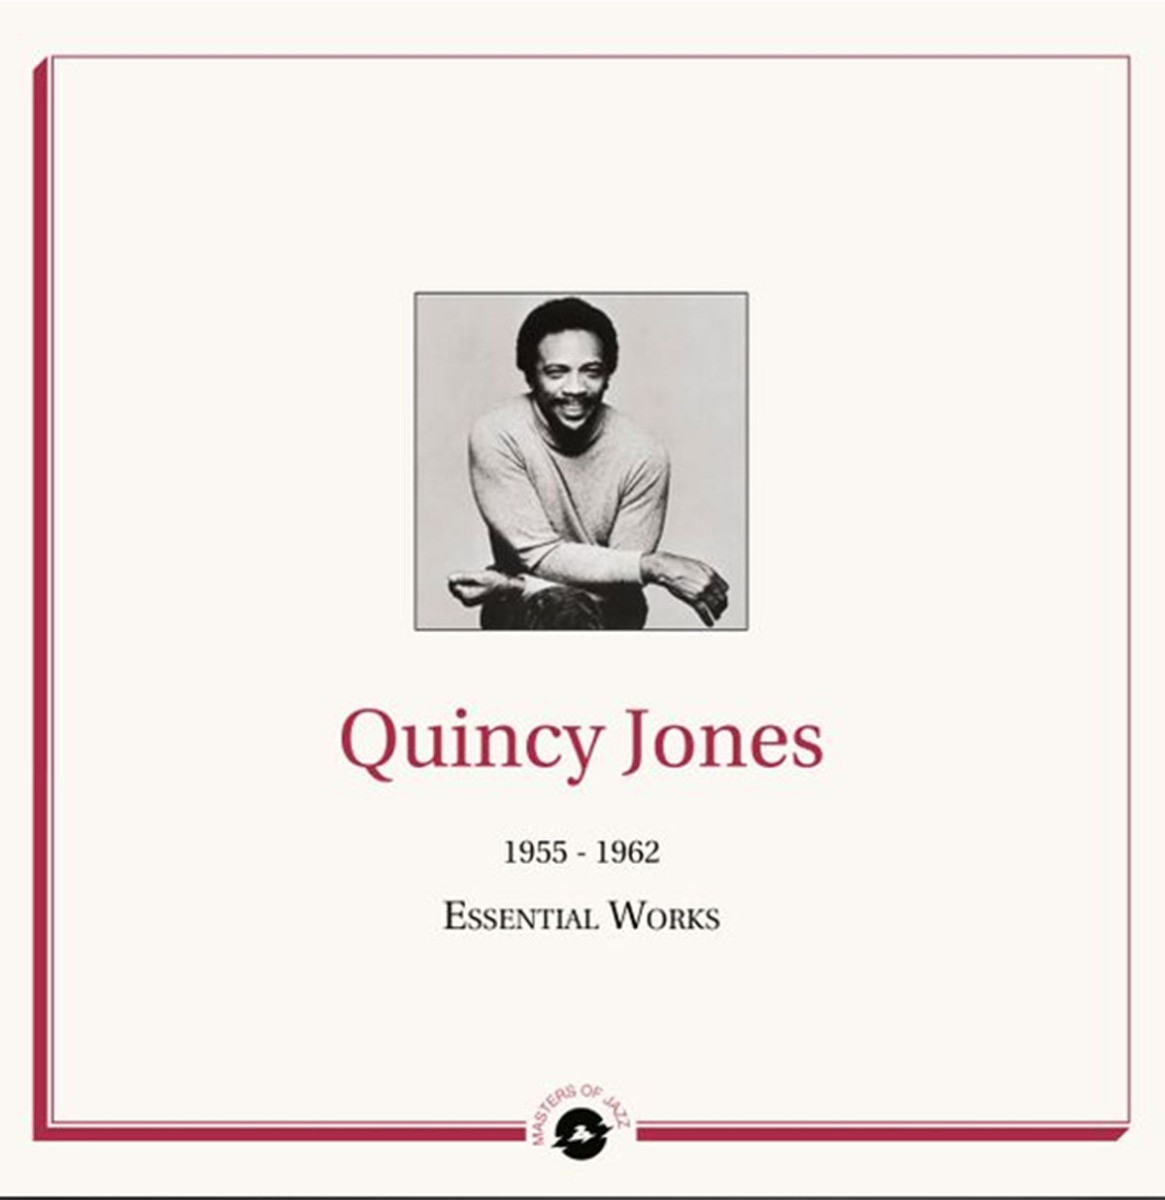 Quincy Jones - 1955-1962 Essential Works 2LP